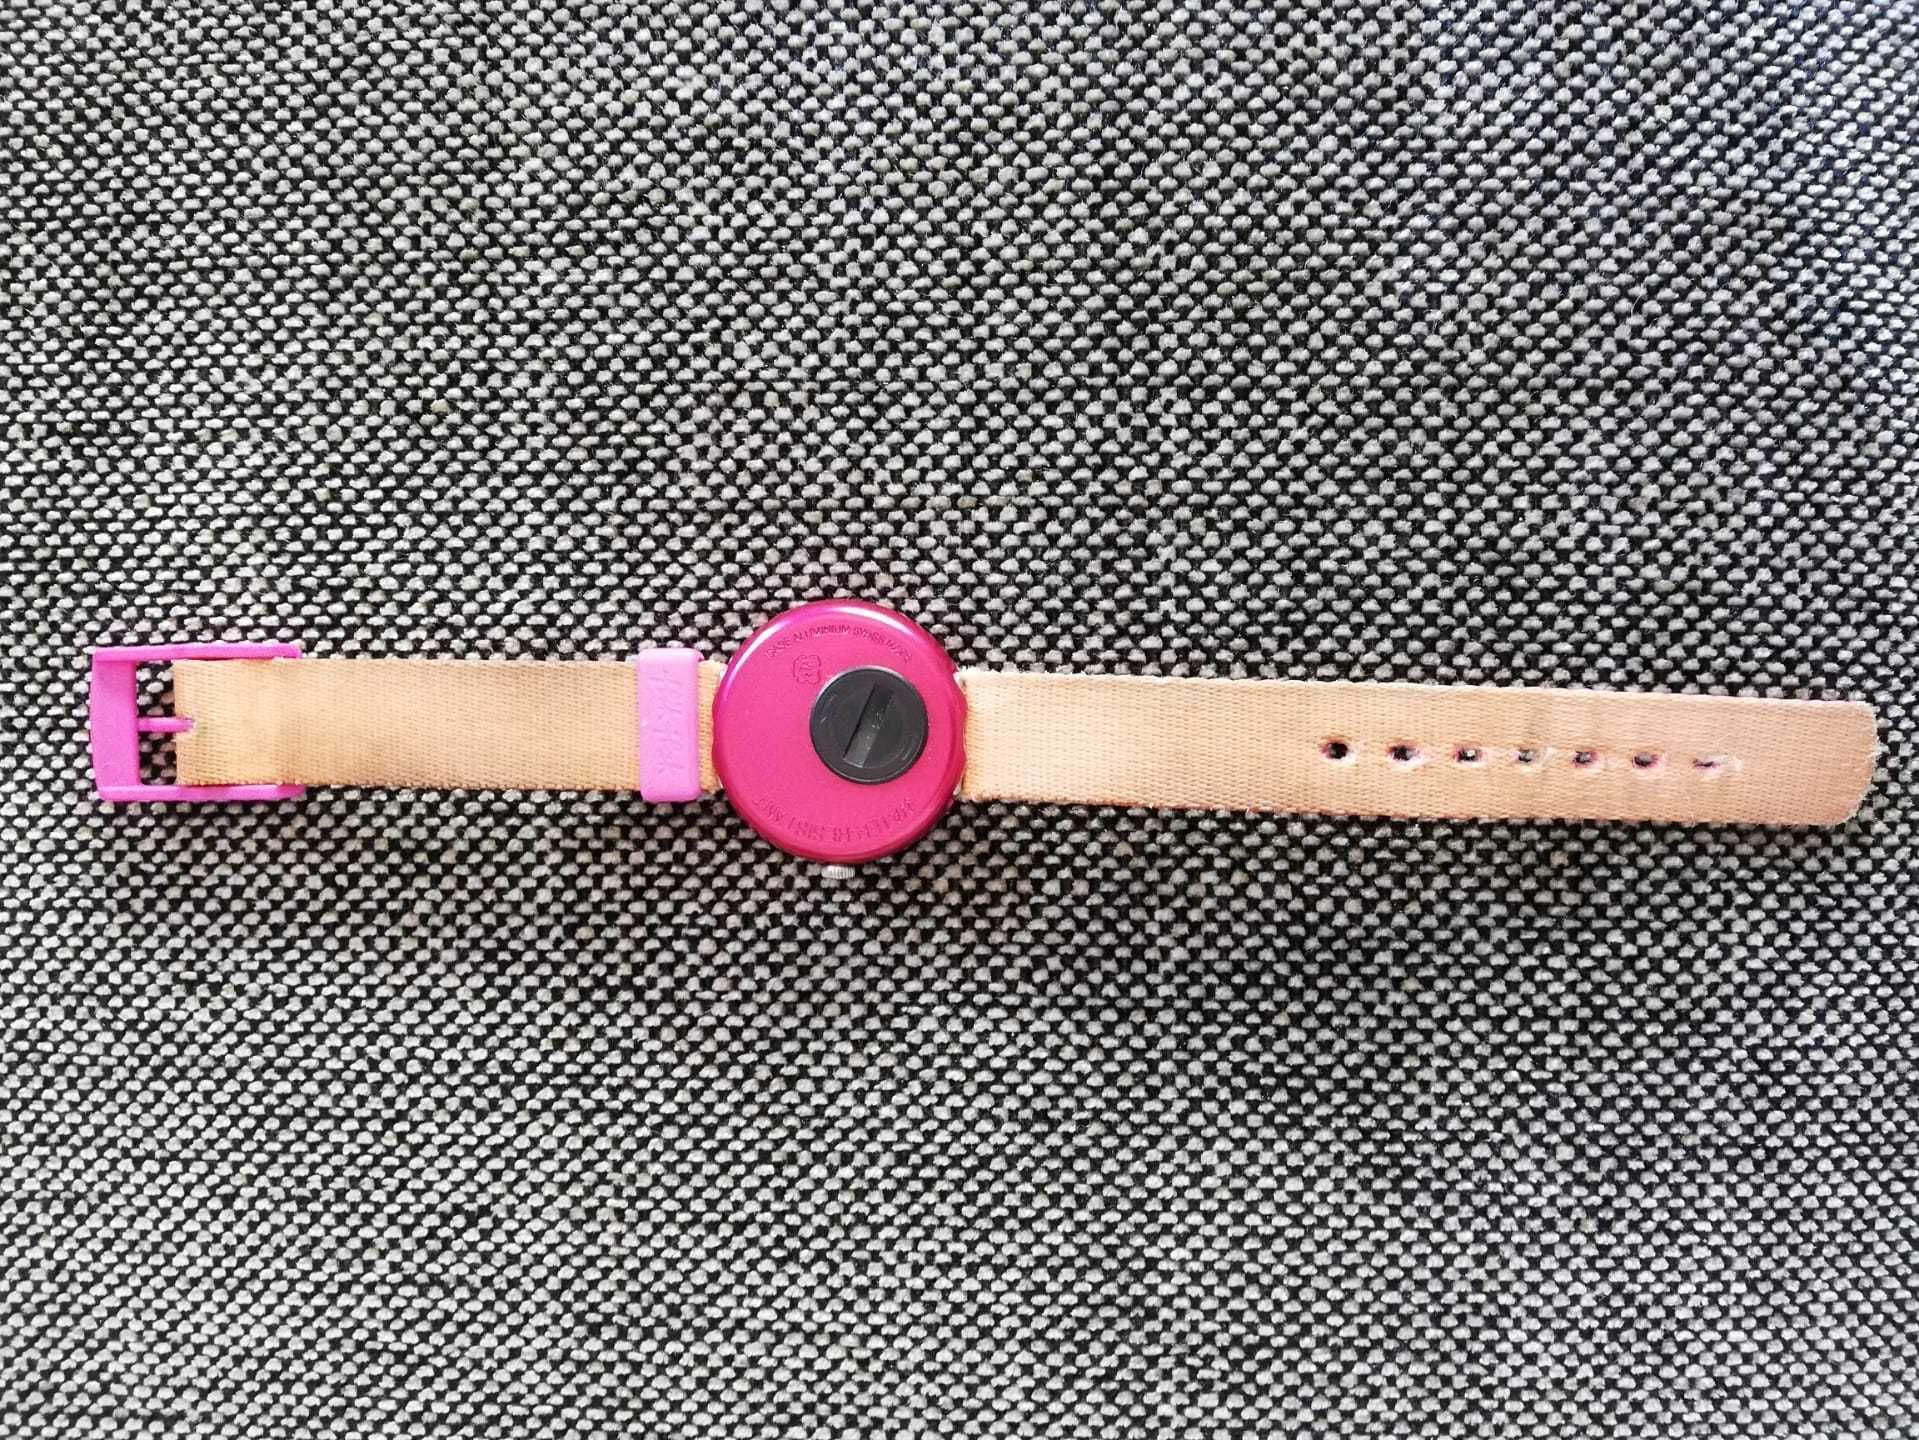 Relógio de criança rosa Swatch flik flak